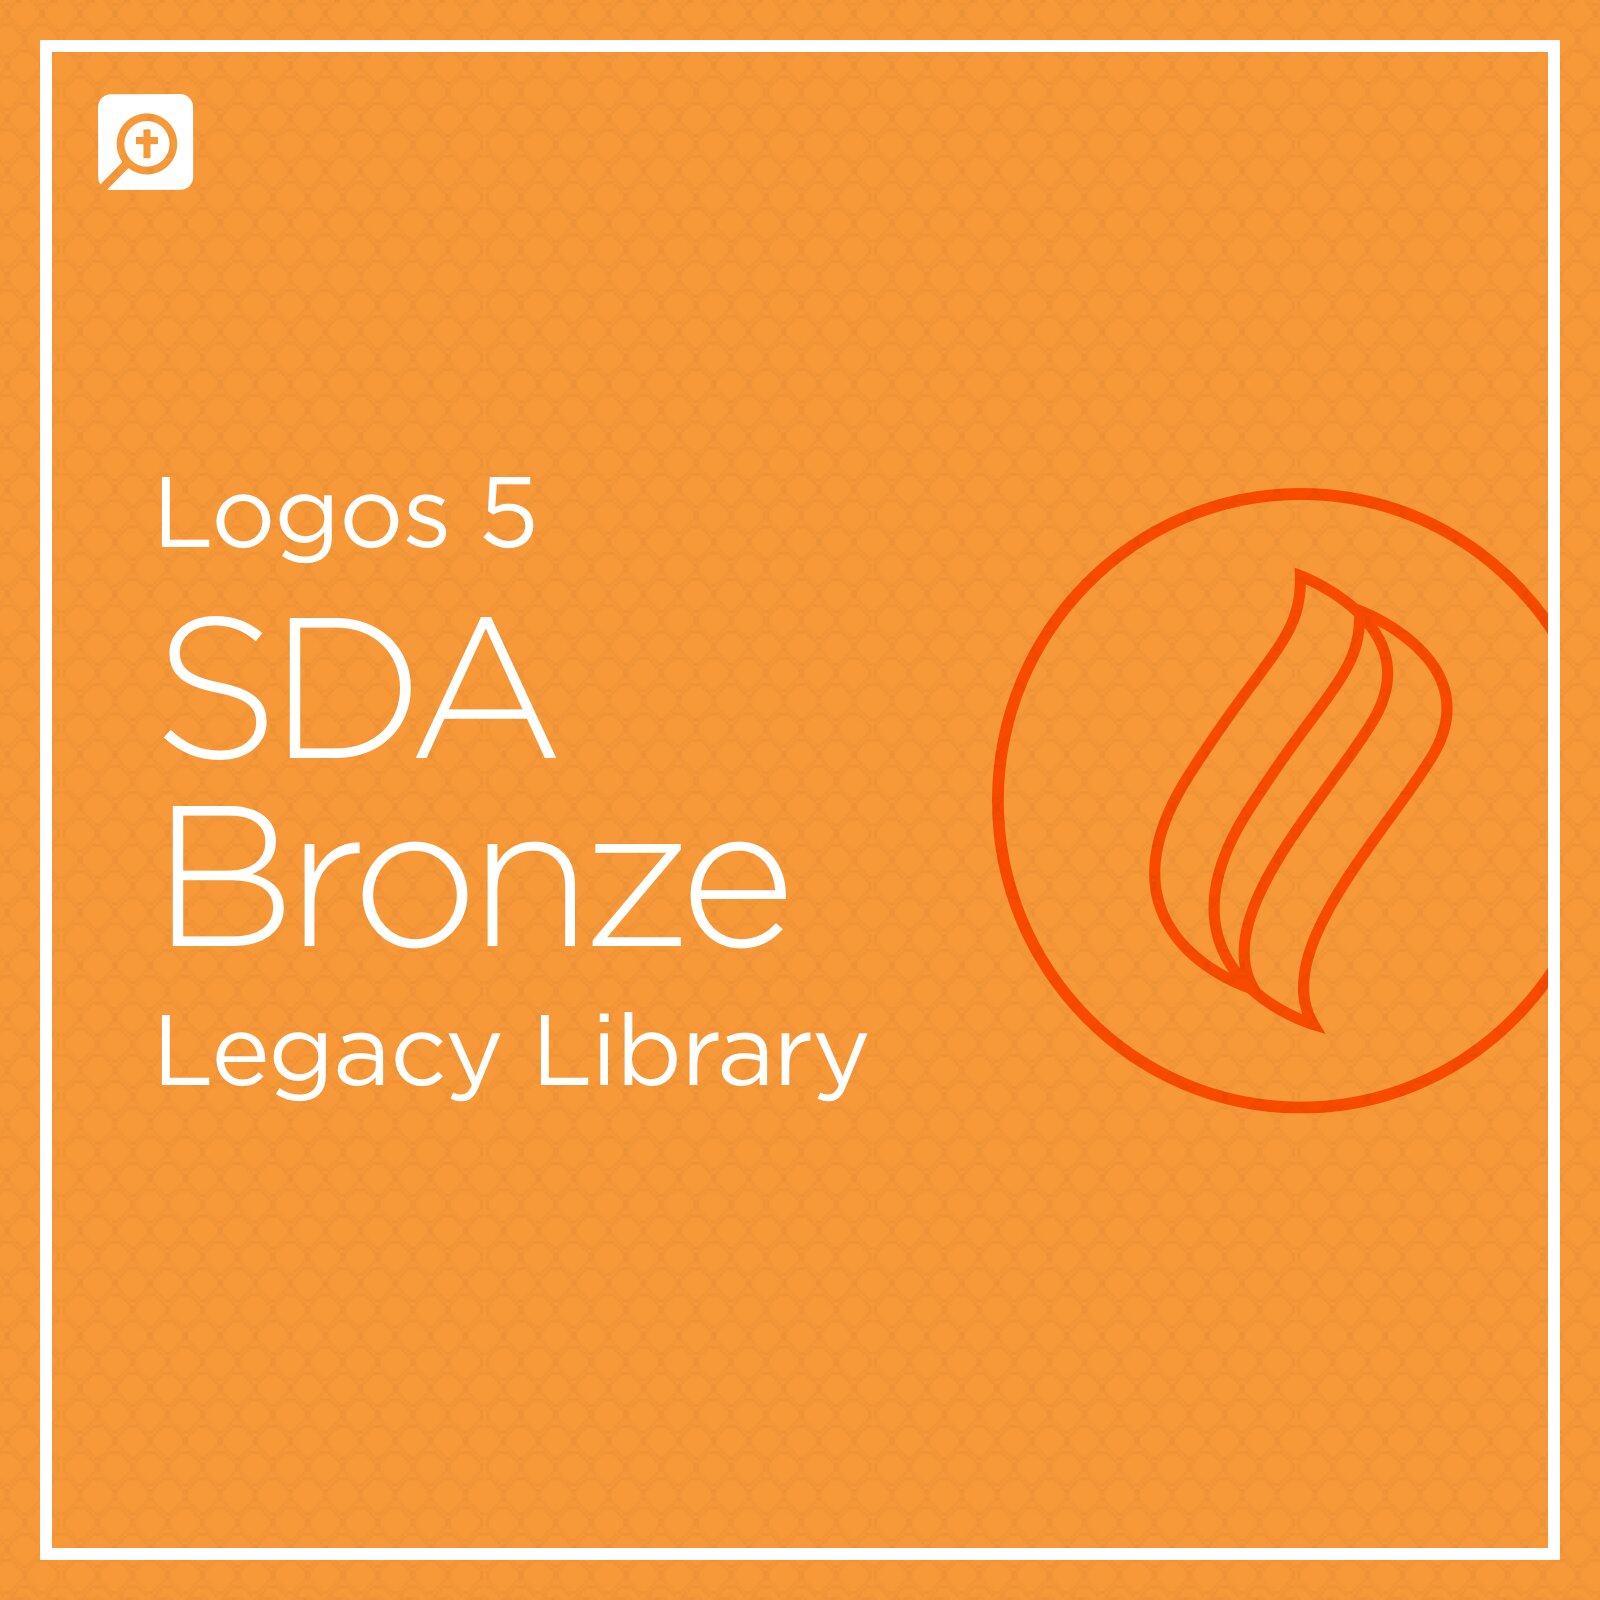 Logos 5 SDA Bronze Legacy Library